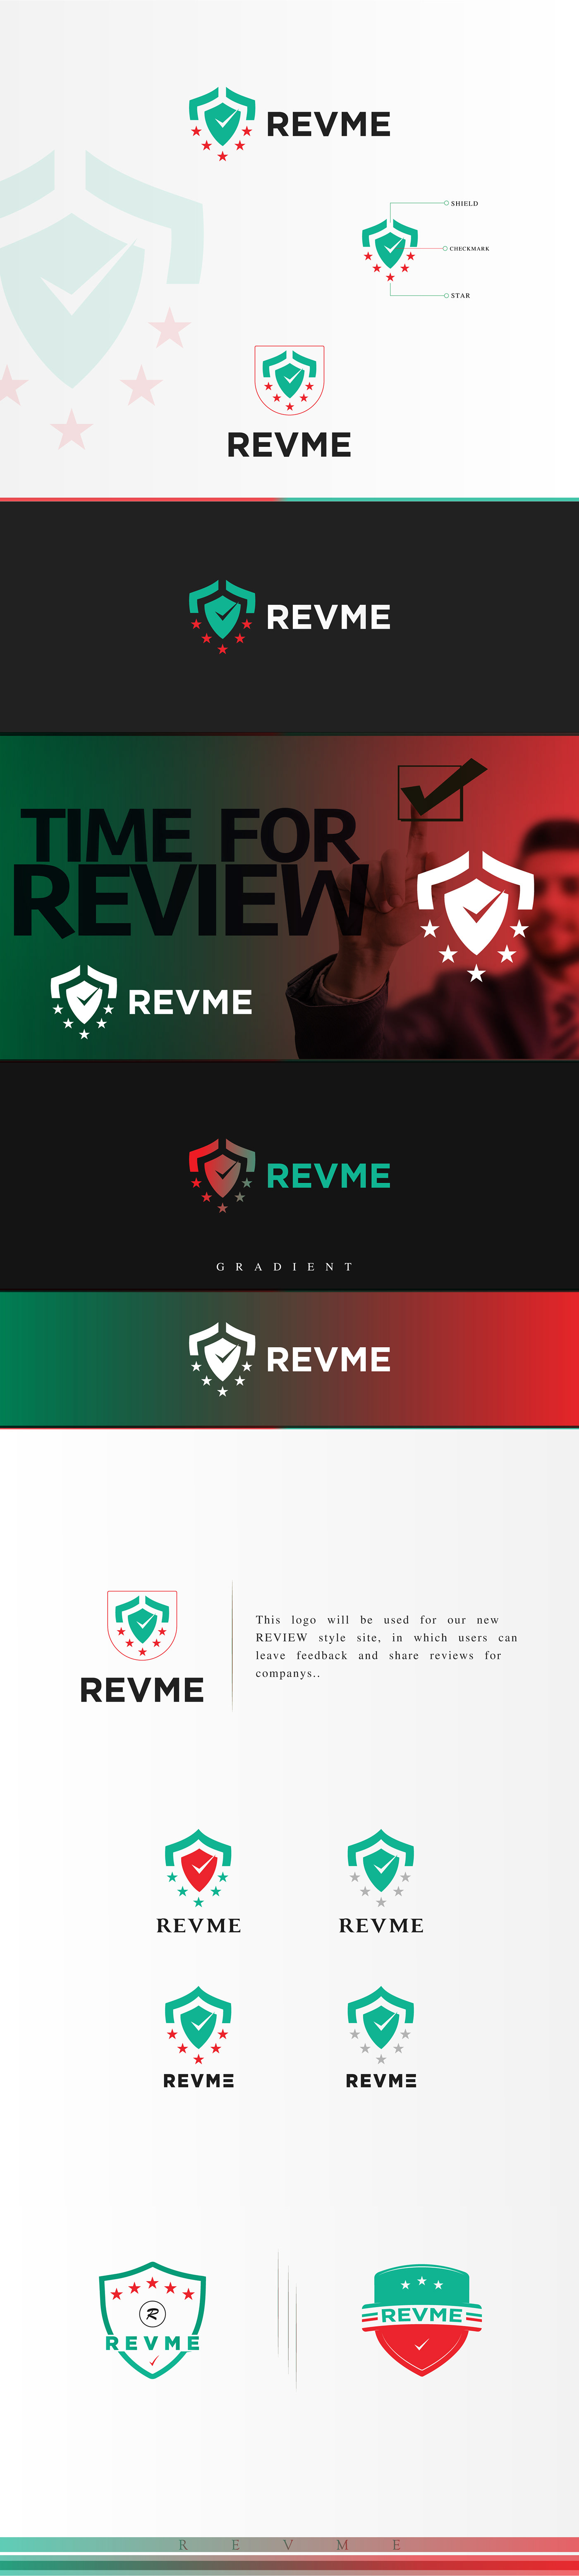 REVME review logo Website company graphic design  brand website logo